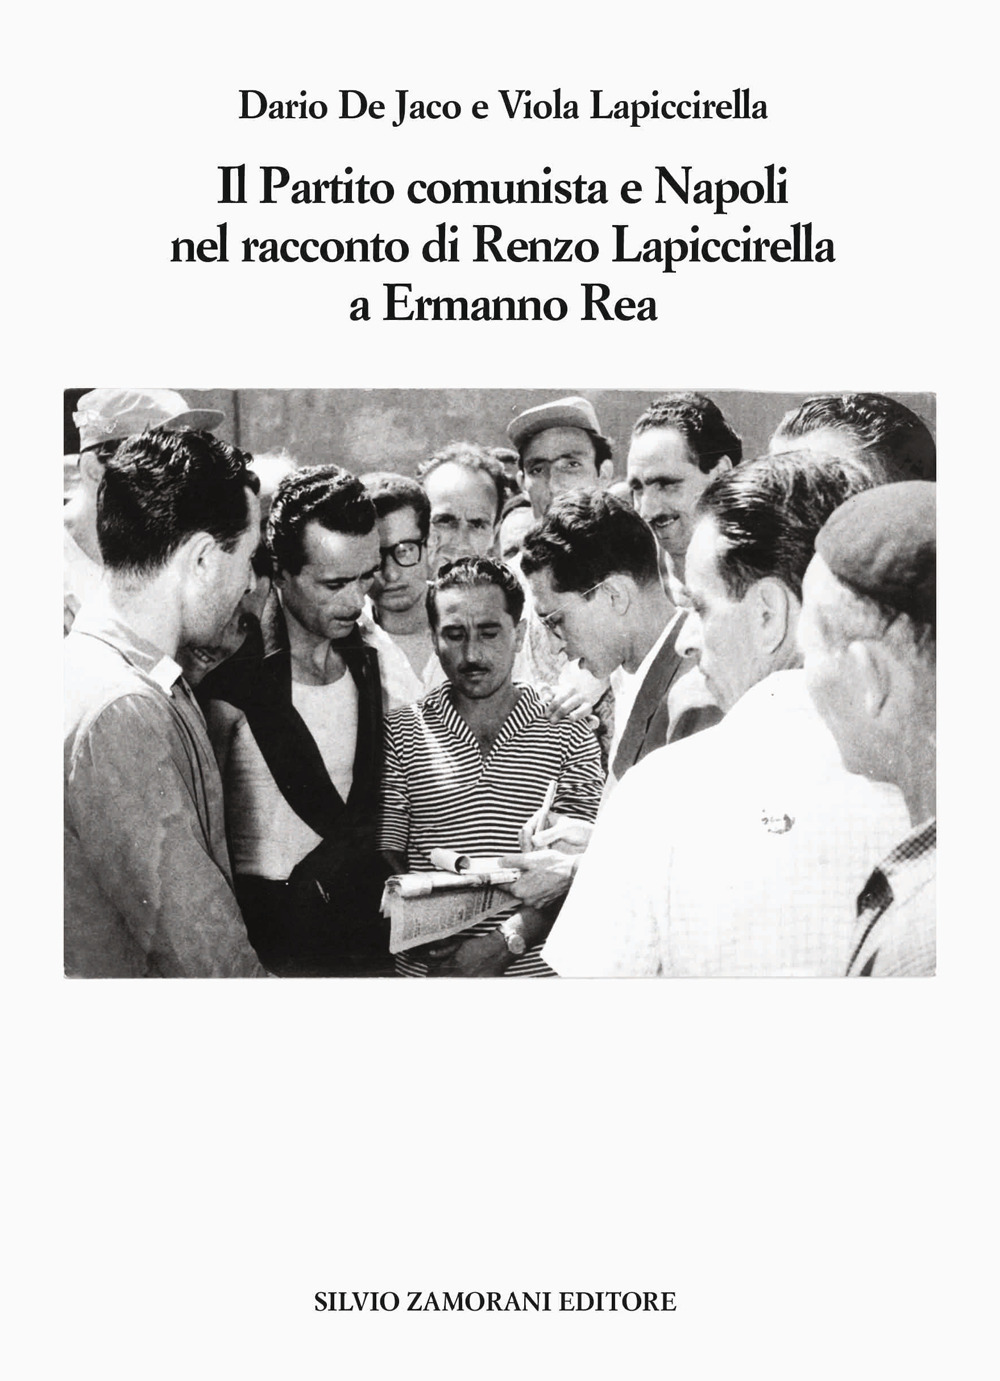 Il Partito comunista e Napoli nel racconto di Renzo Lapiccirella a Ermanno Rea